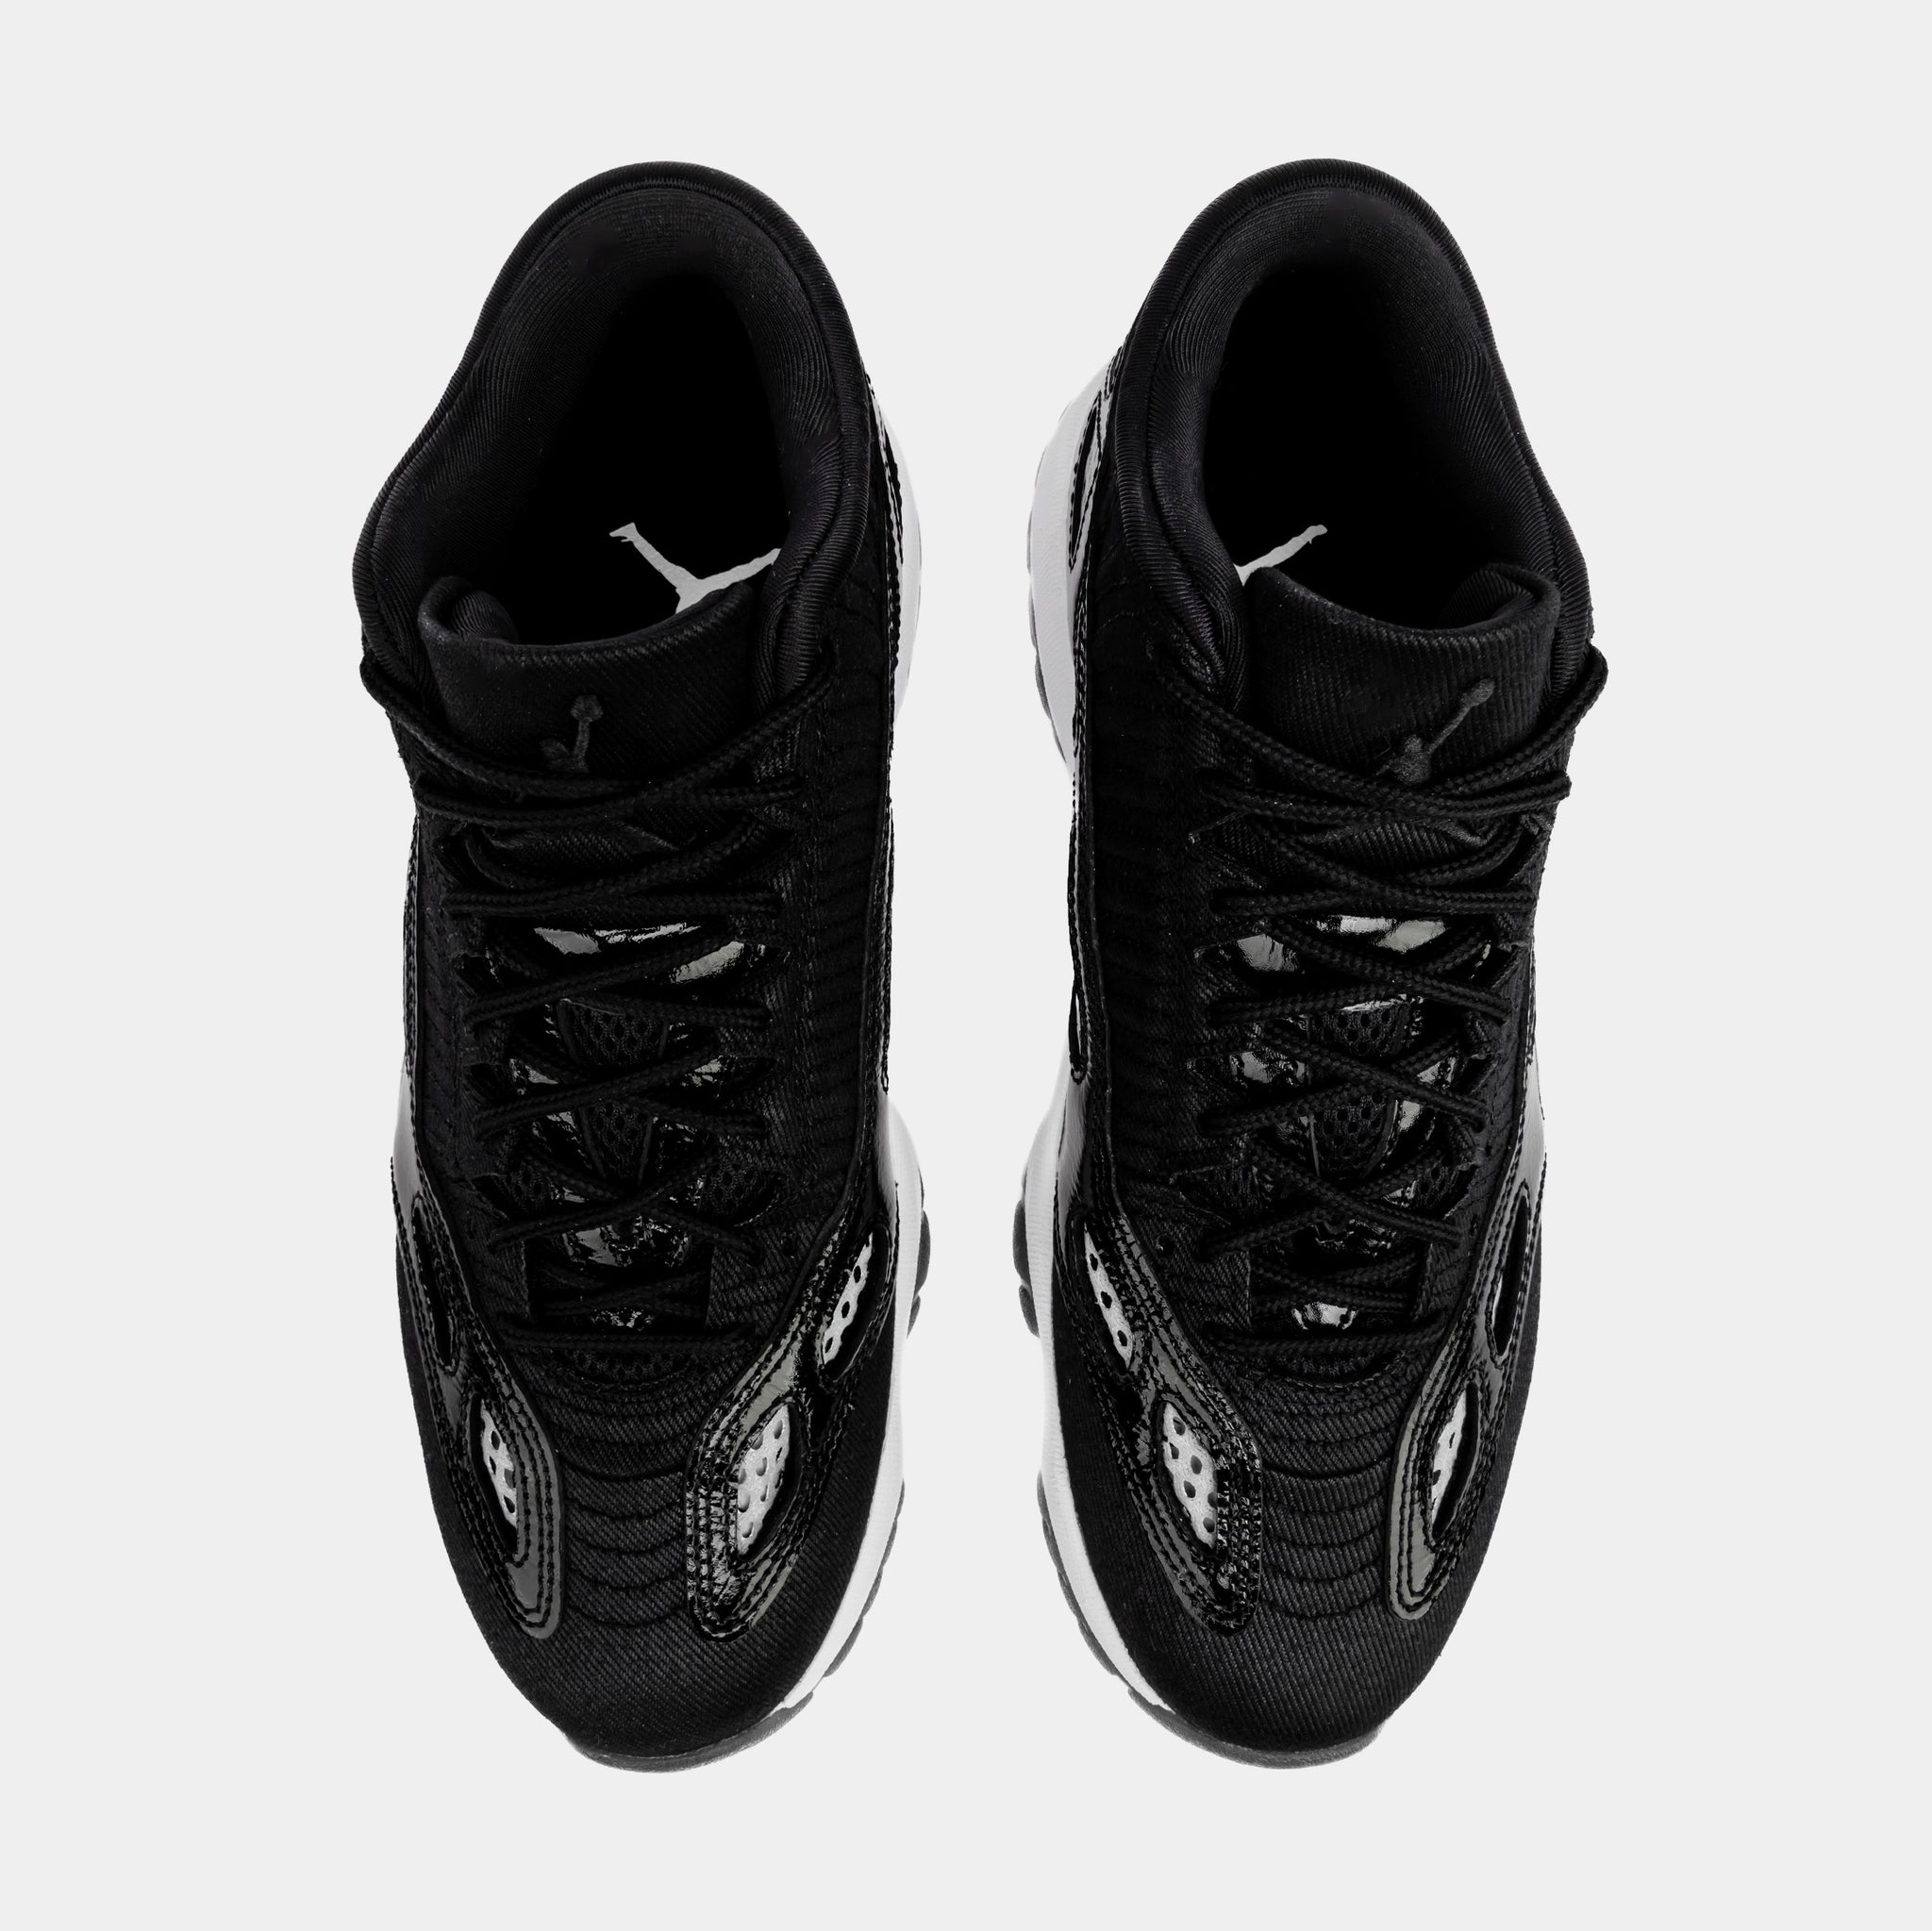 Jordan Air Jordan 11 Retro Low IE Craft Mens Lifestyle Shoes Black